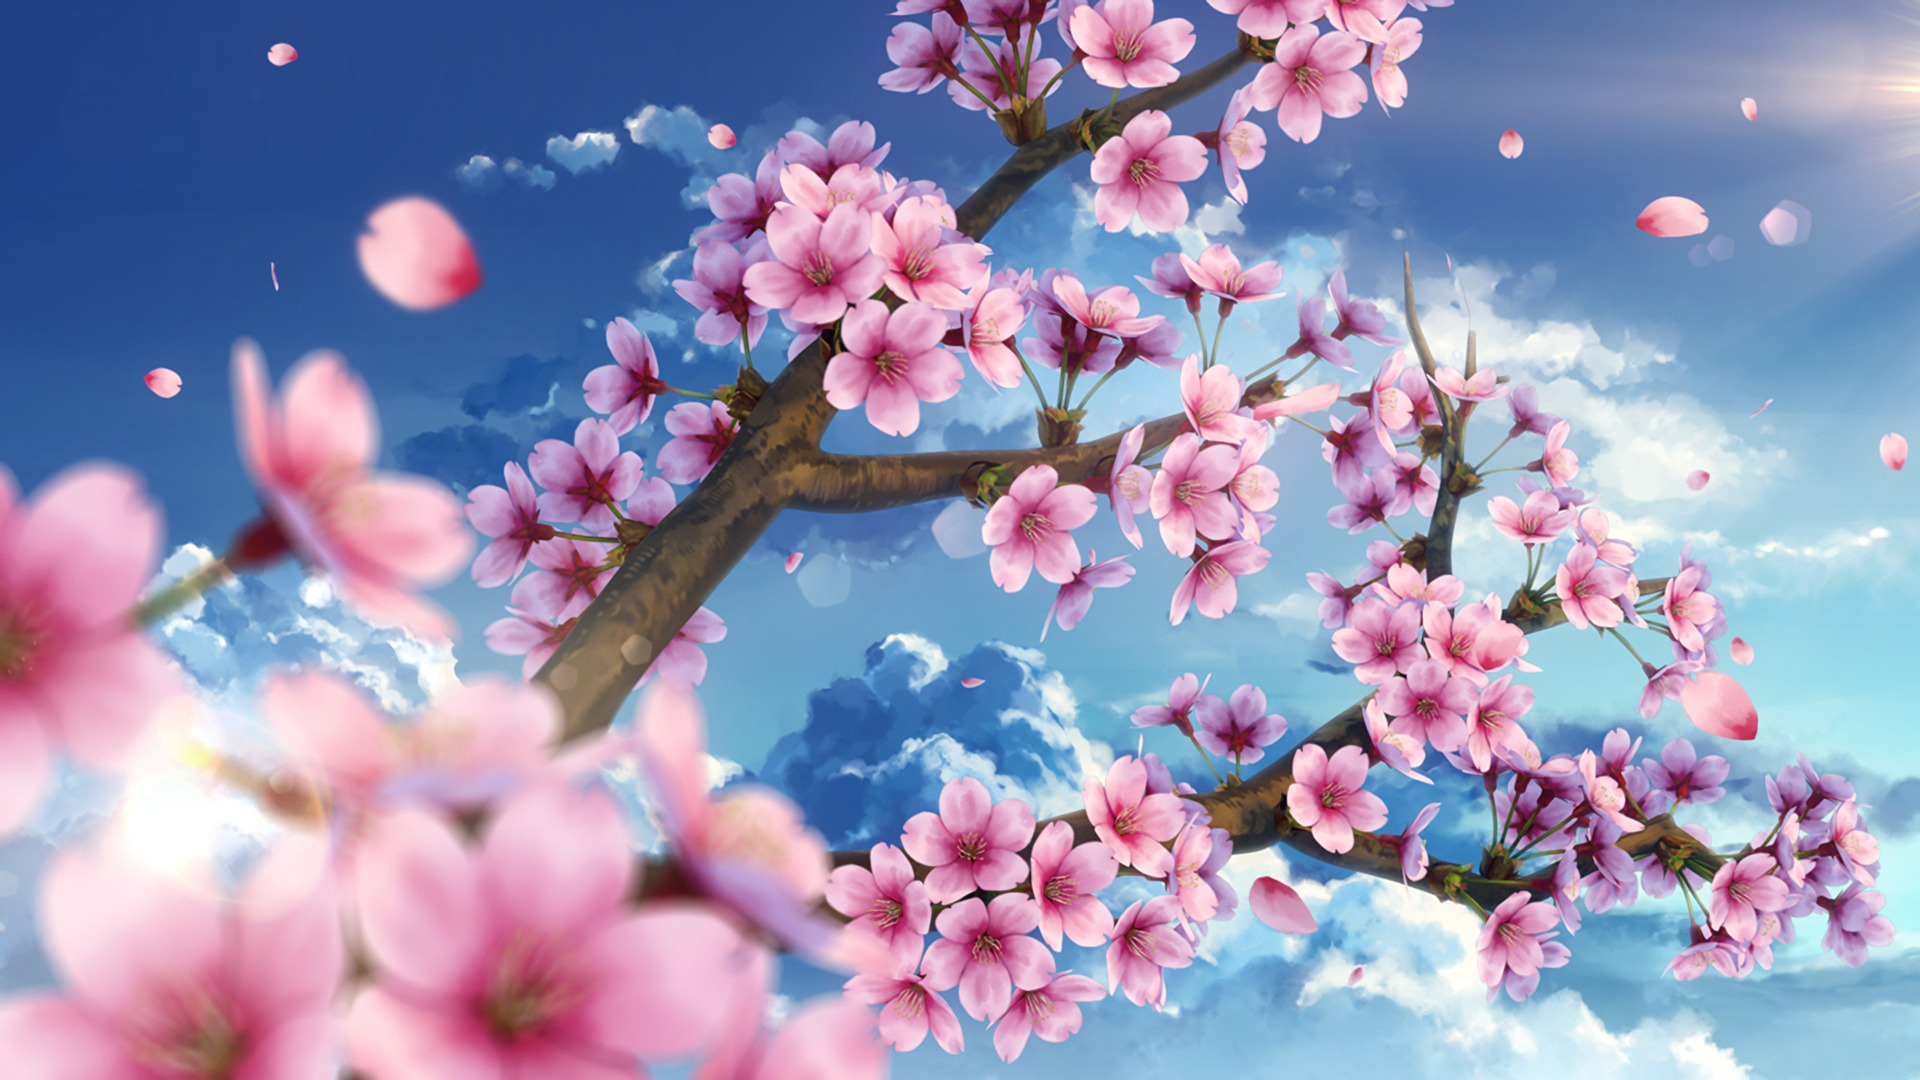 Hình ảnh hoa Anh Đào anime đẹp, lãng mạn, dễ thương nhất